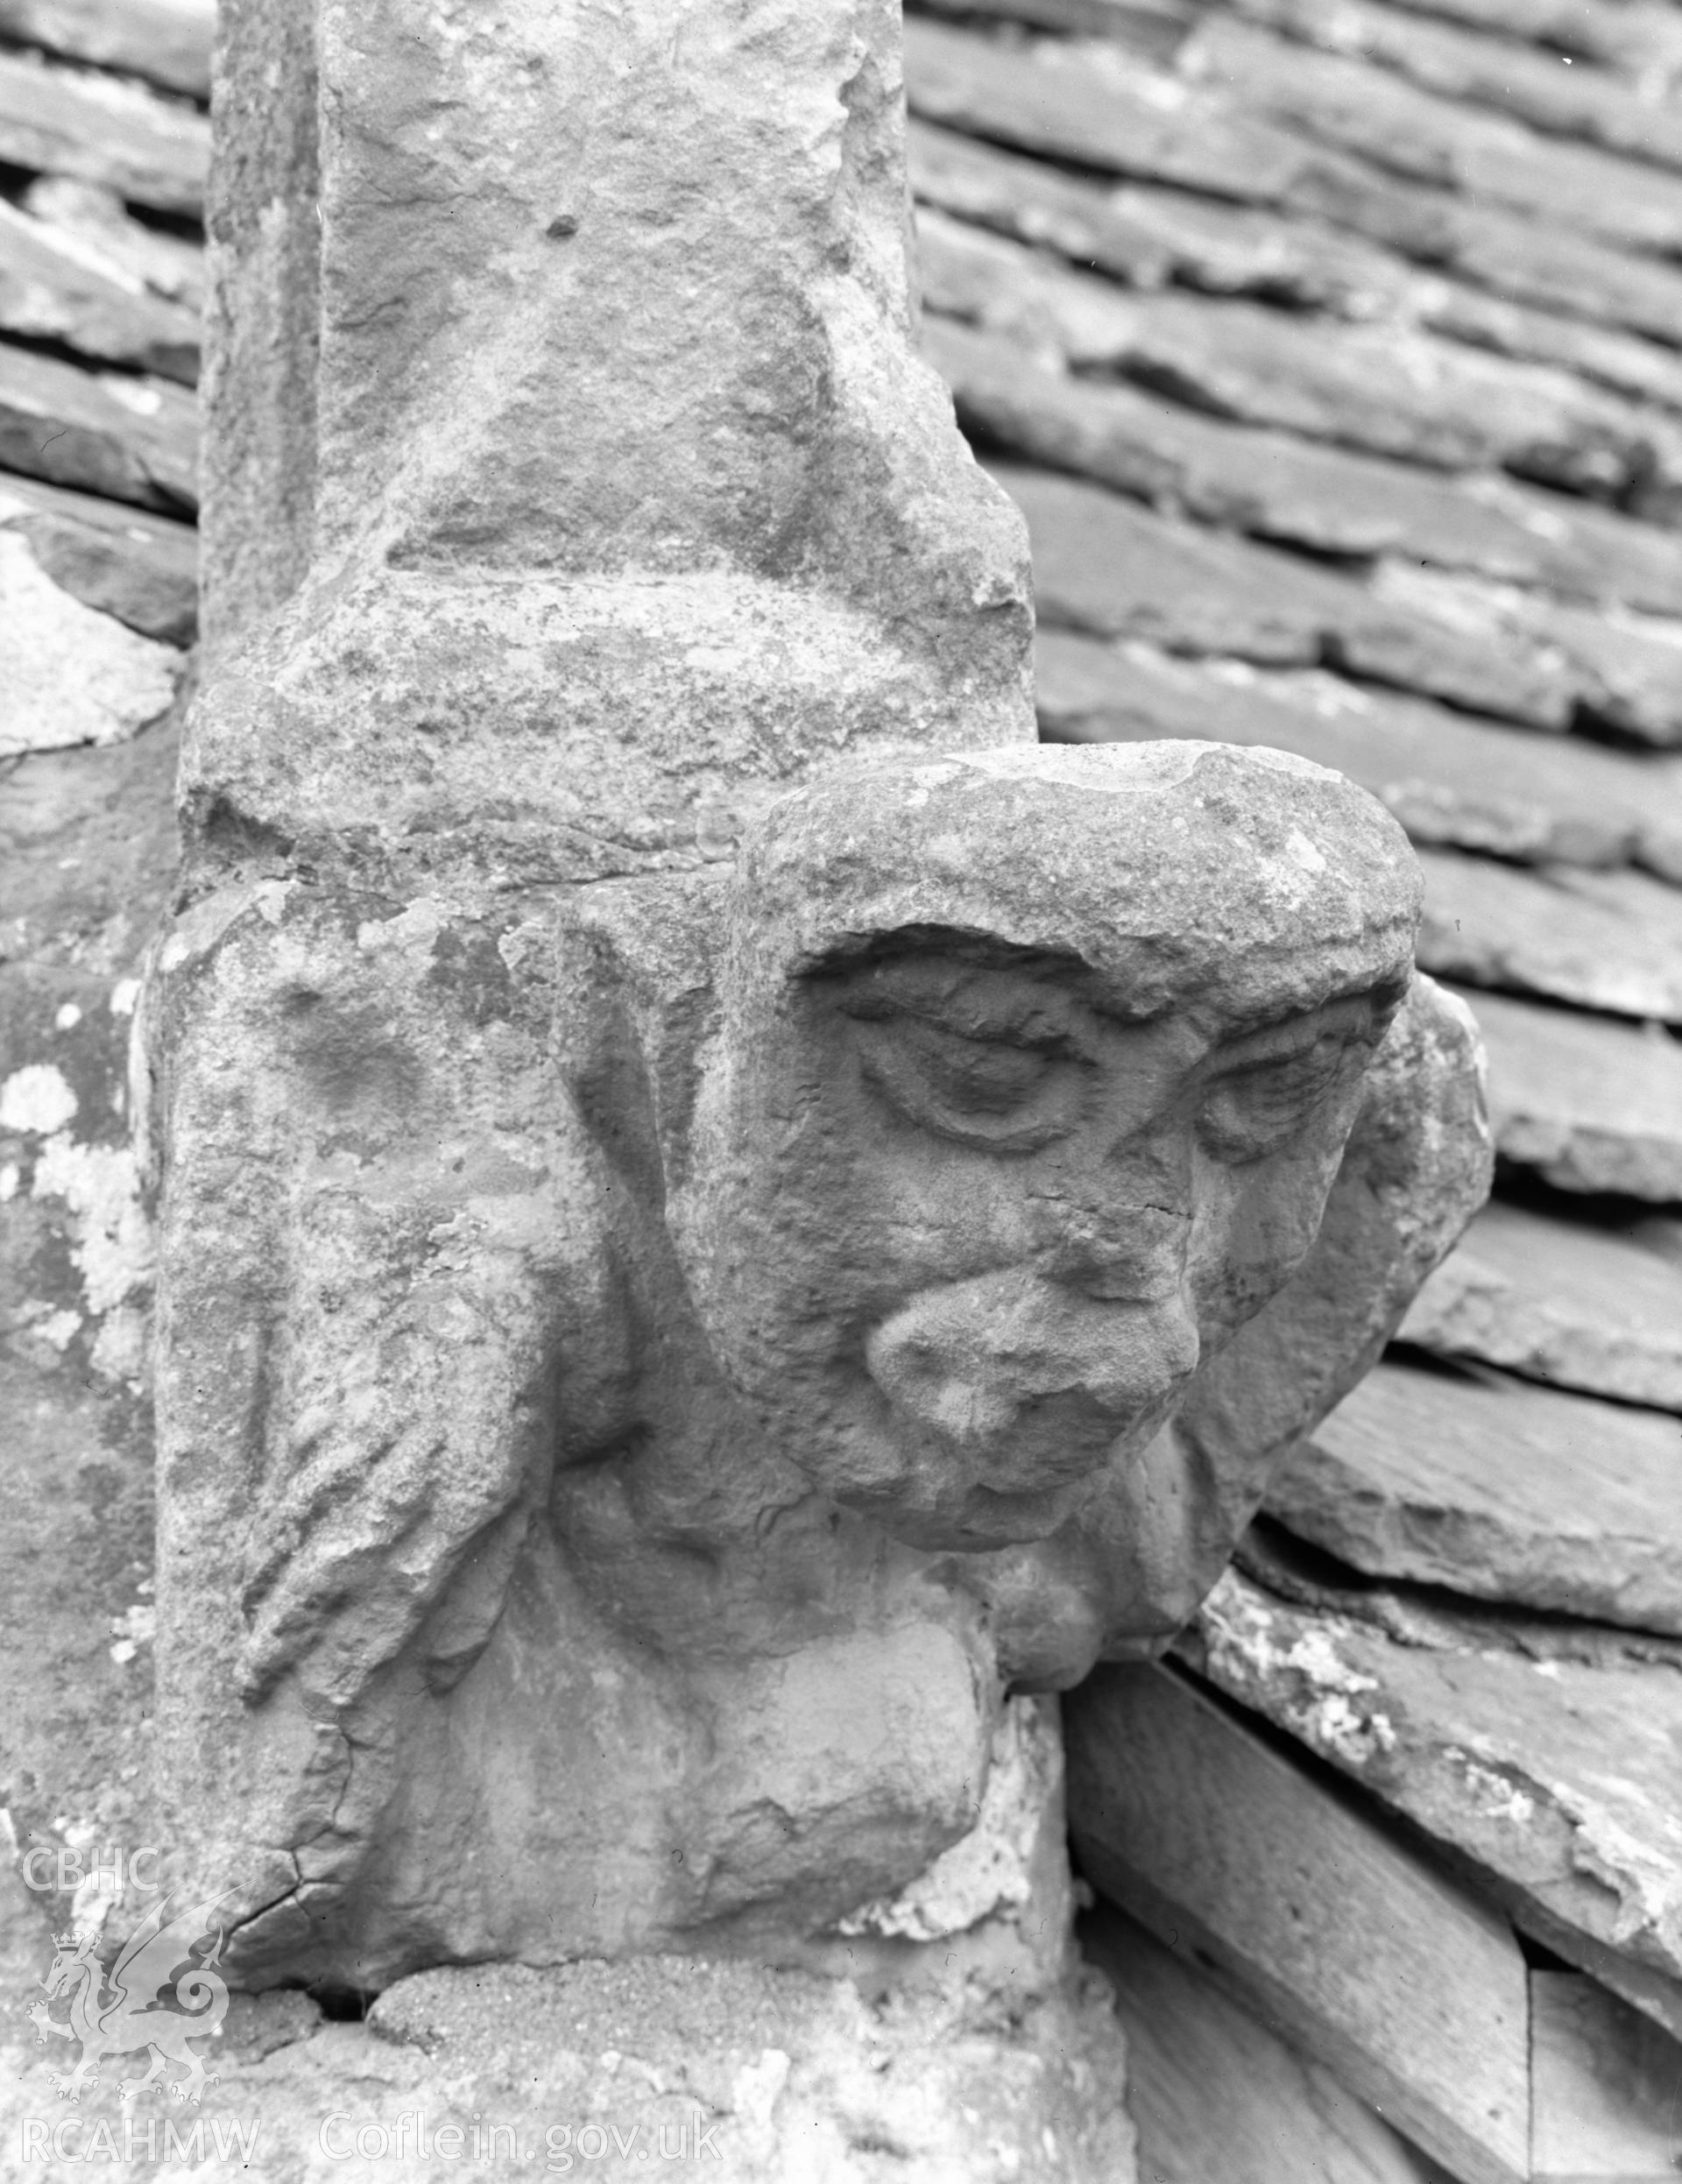 View of gargoyle at St David's Church, Laleston taken 09.04.65.